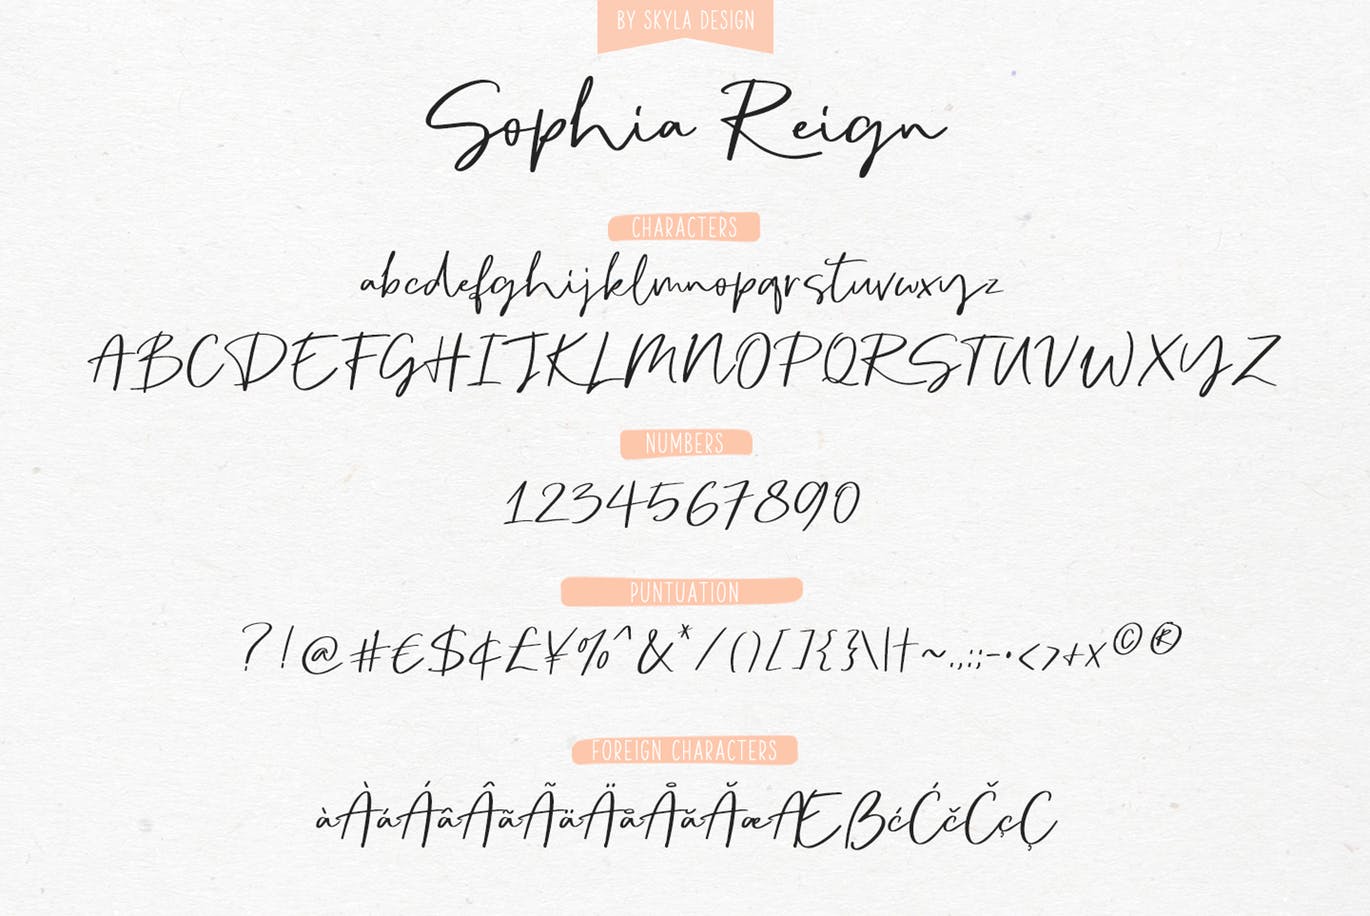 英文钢笔签名字体16素材精选&大写字母正楷字体16素材精选二重奏 Sophia Reign signature font duo插图(10)